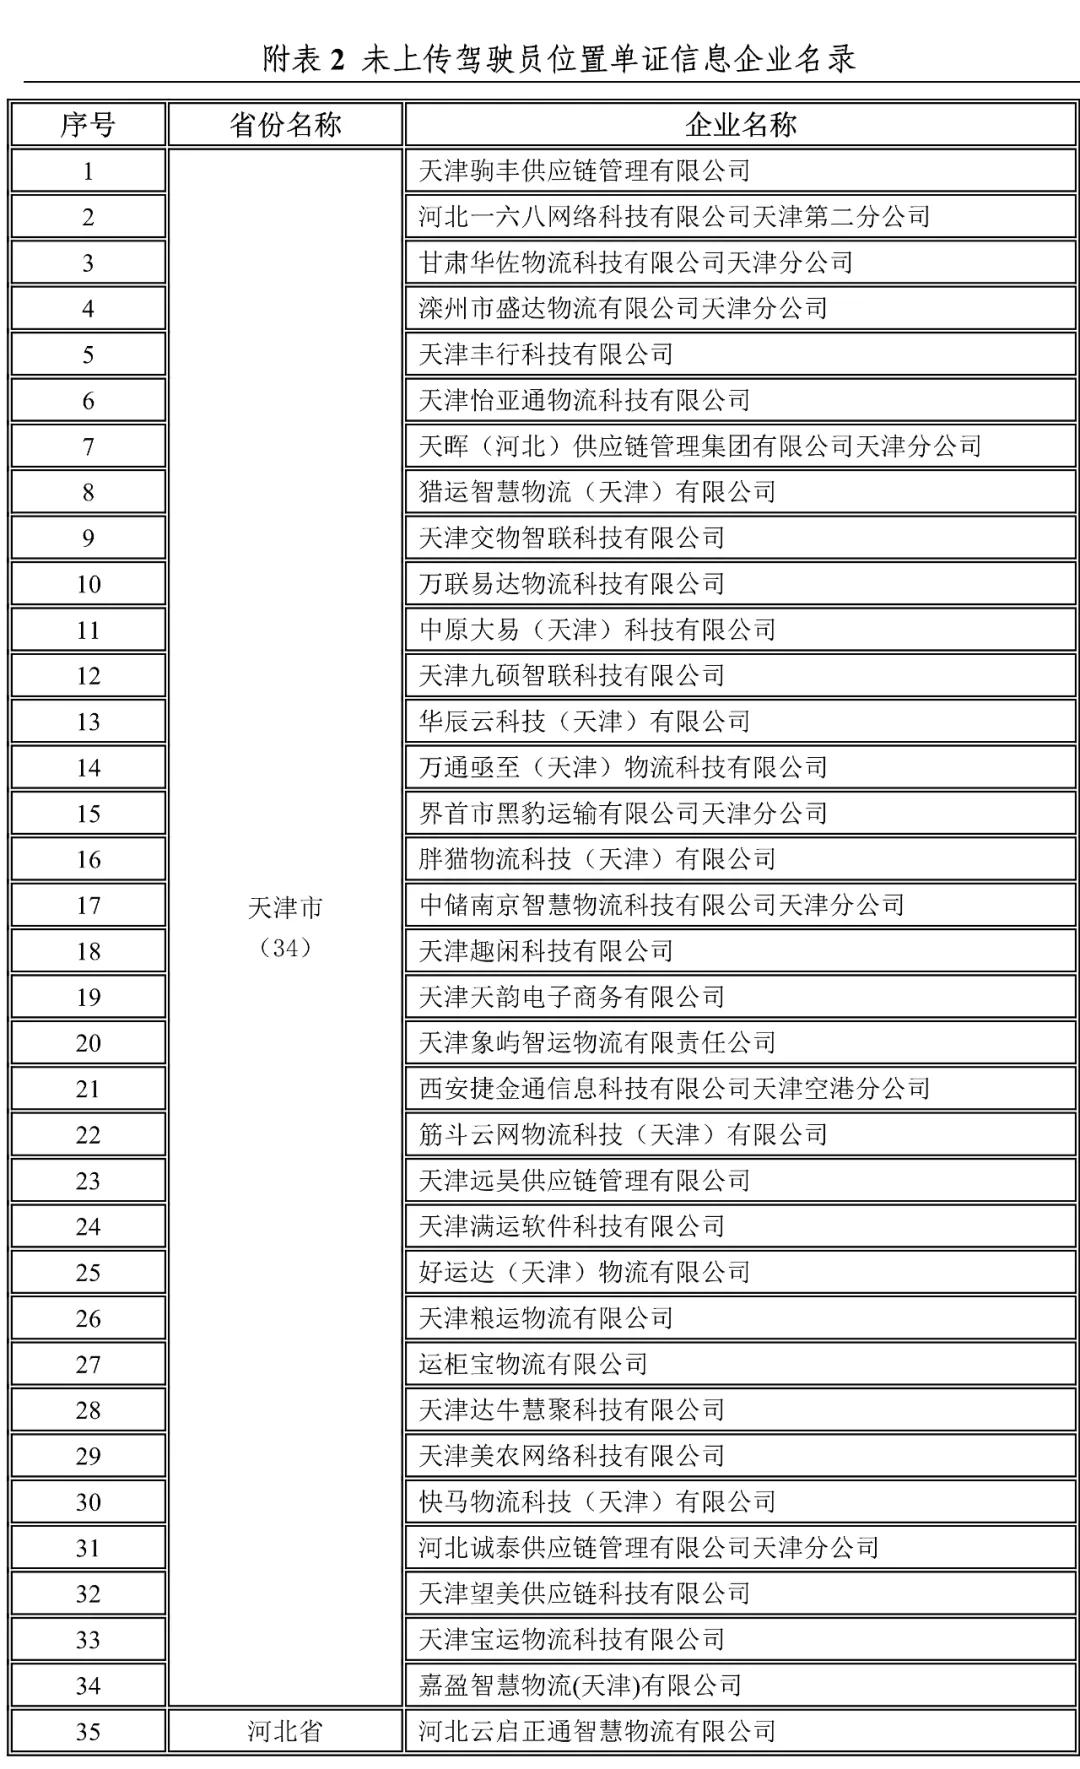 天津,河北未上传驾驶员位置单证信息企业名录